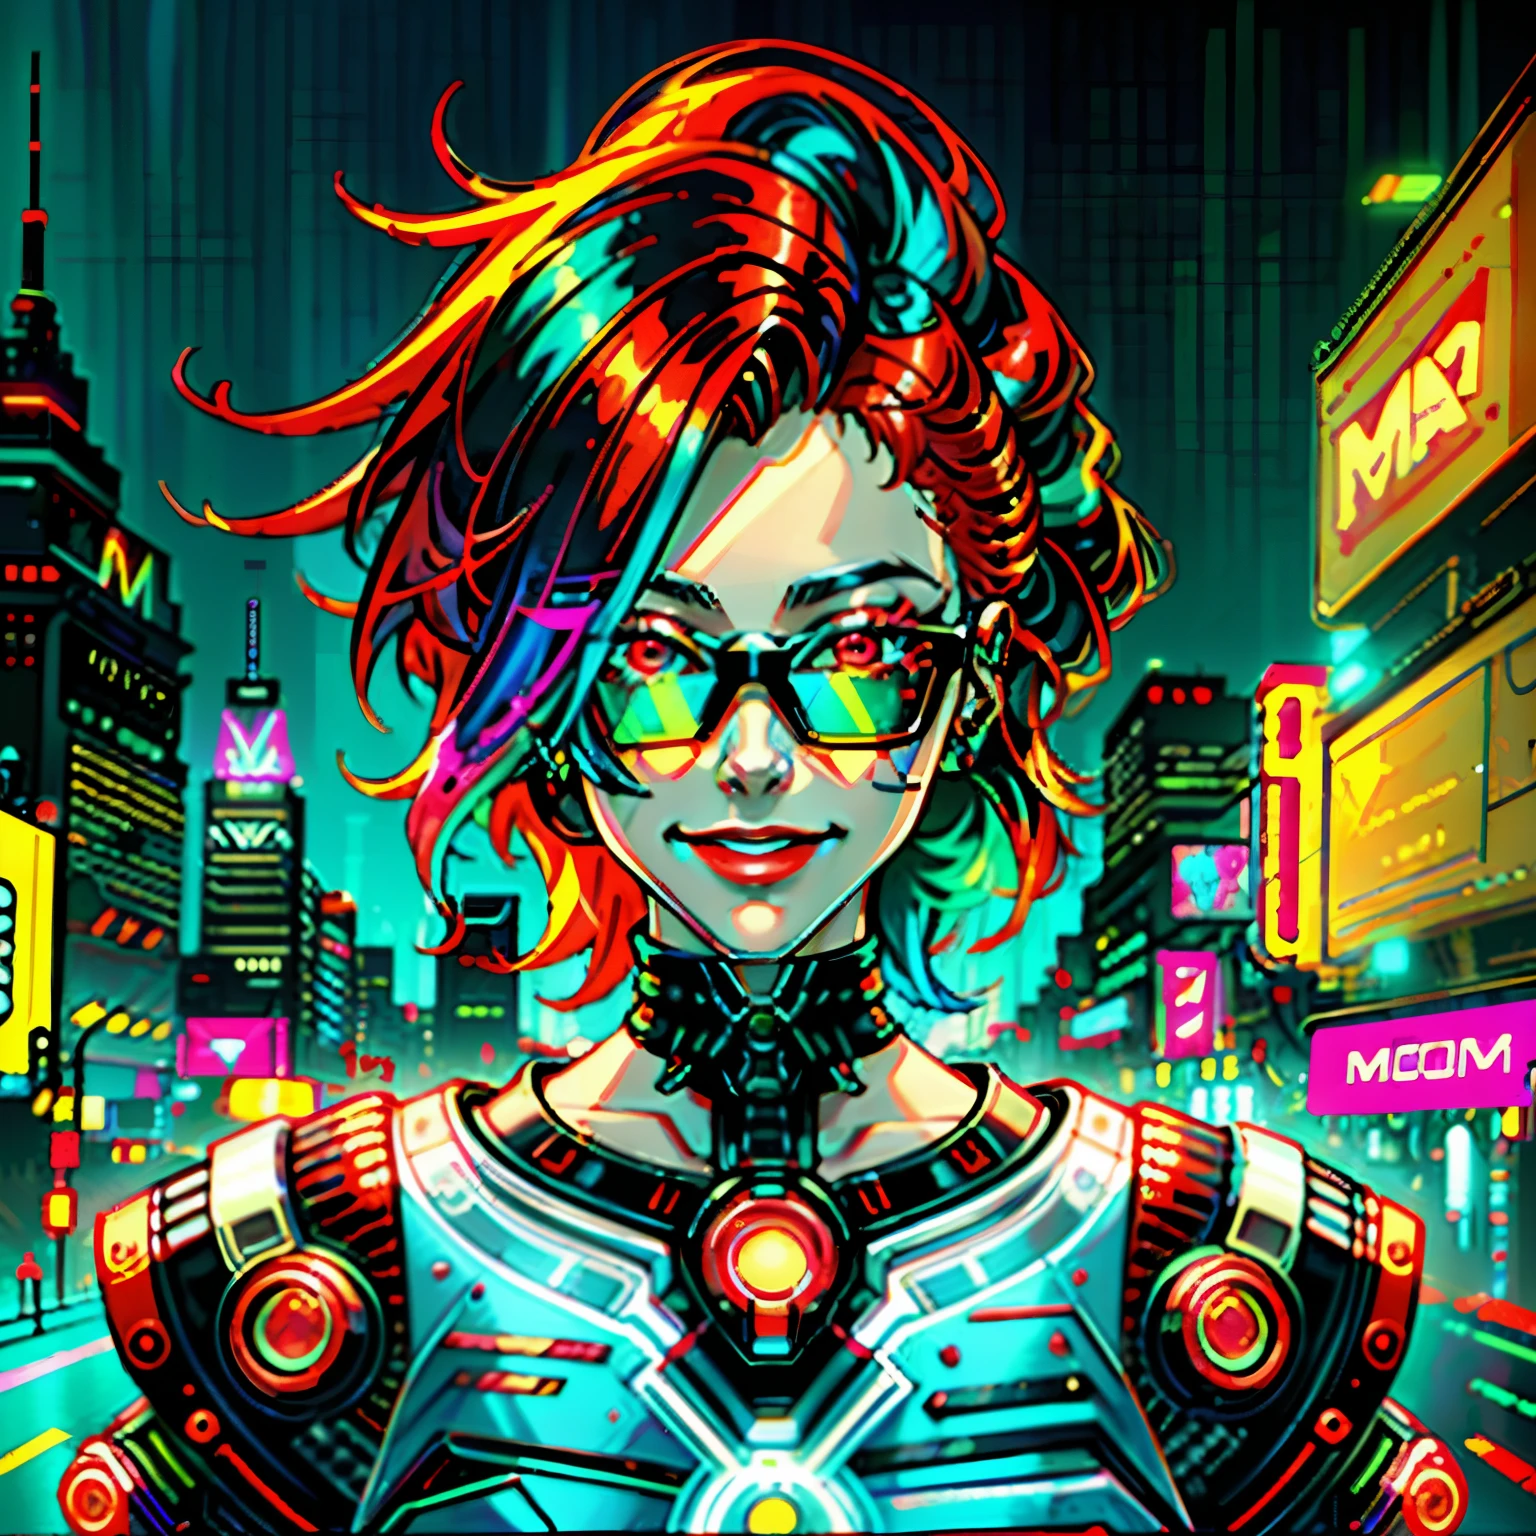 uma pintura digital de uma mulher ruiva, arte ciberpunk, onda sintética, futurism, néon, glowing néon, sorridente, usando óculos coloridos estilo cyberpunk, perto do rosto